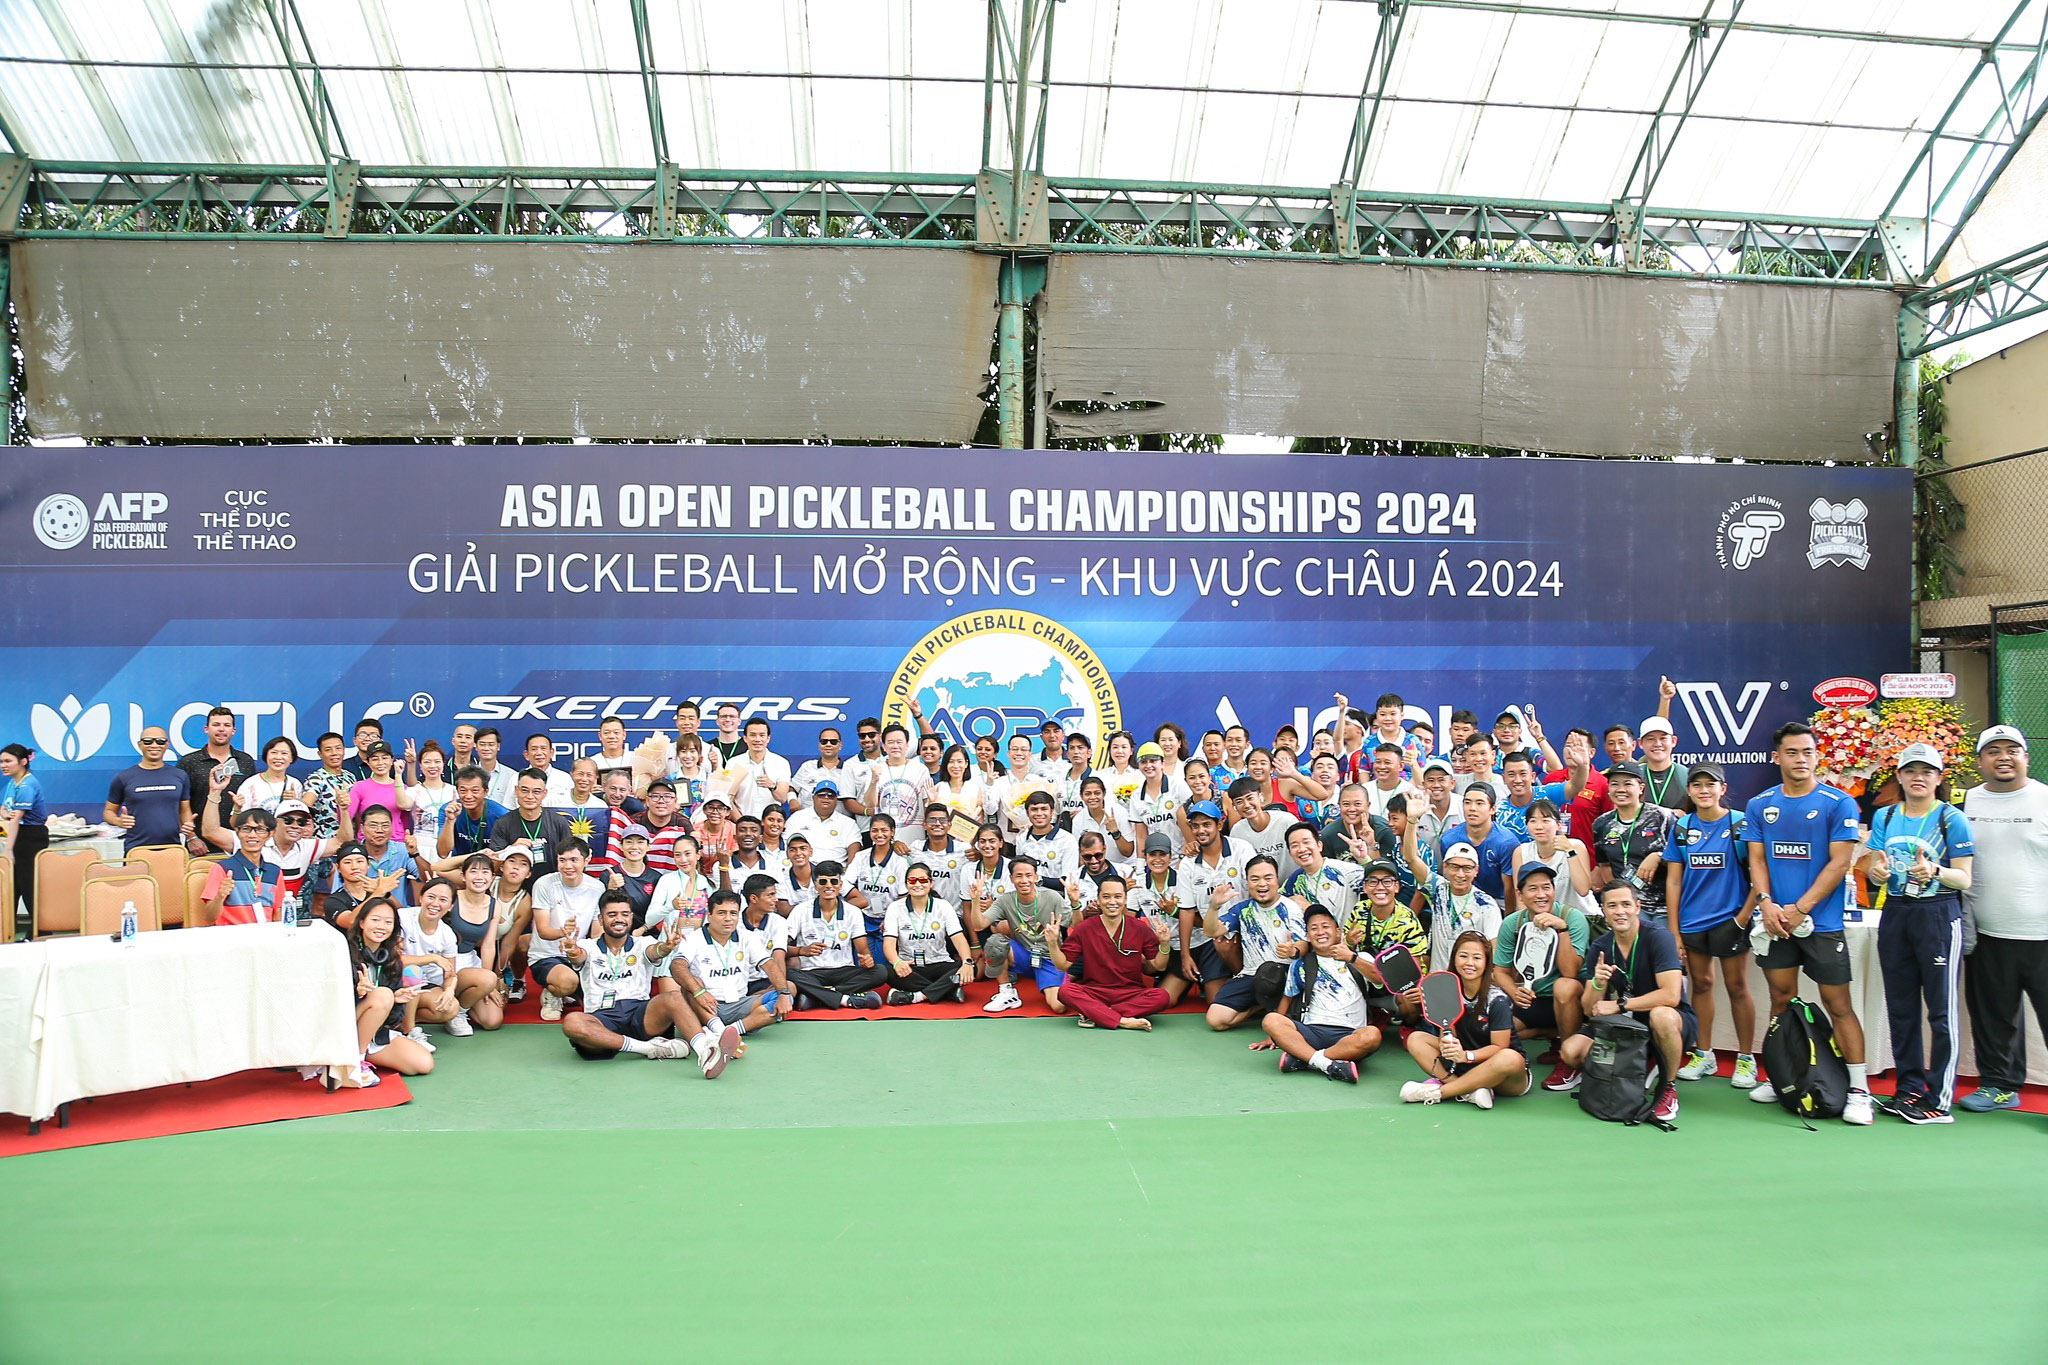 Giải Pickleball châu Á 2024 lần đầu tổ chức tại Việt Nam- Ảnh 1.